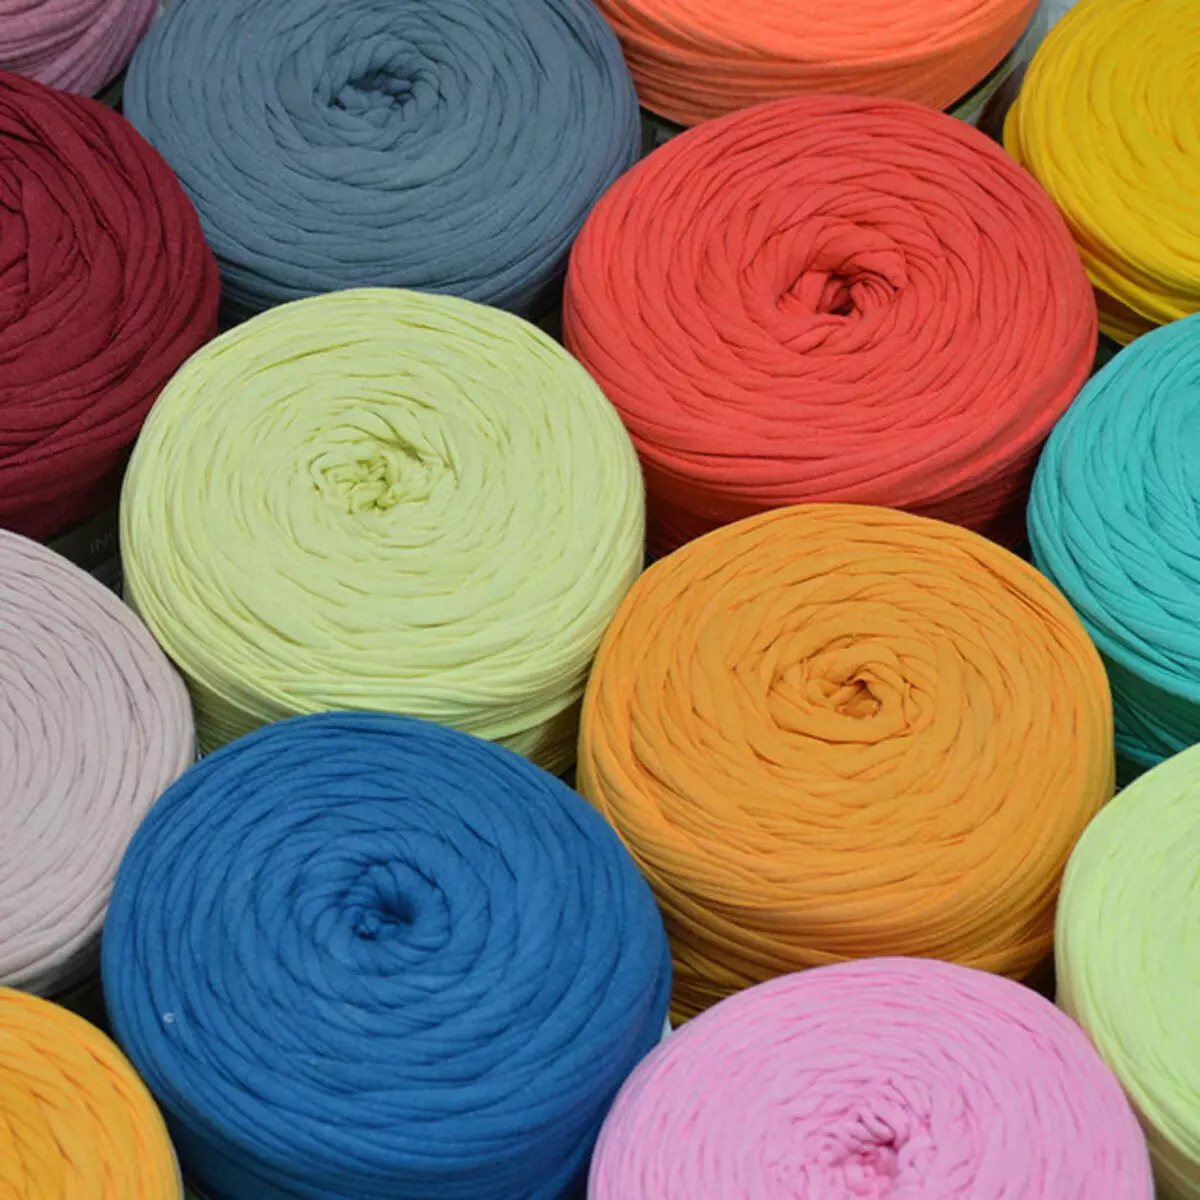 Pletací příze: vlastnosti objemové příze pro pletení bez paprsků, výrobců 6705_21